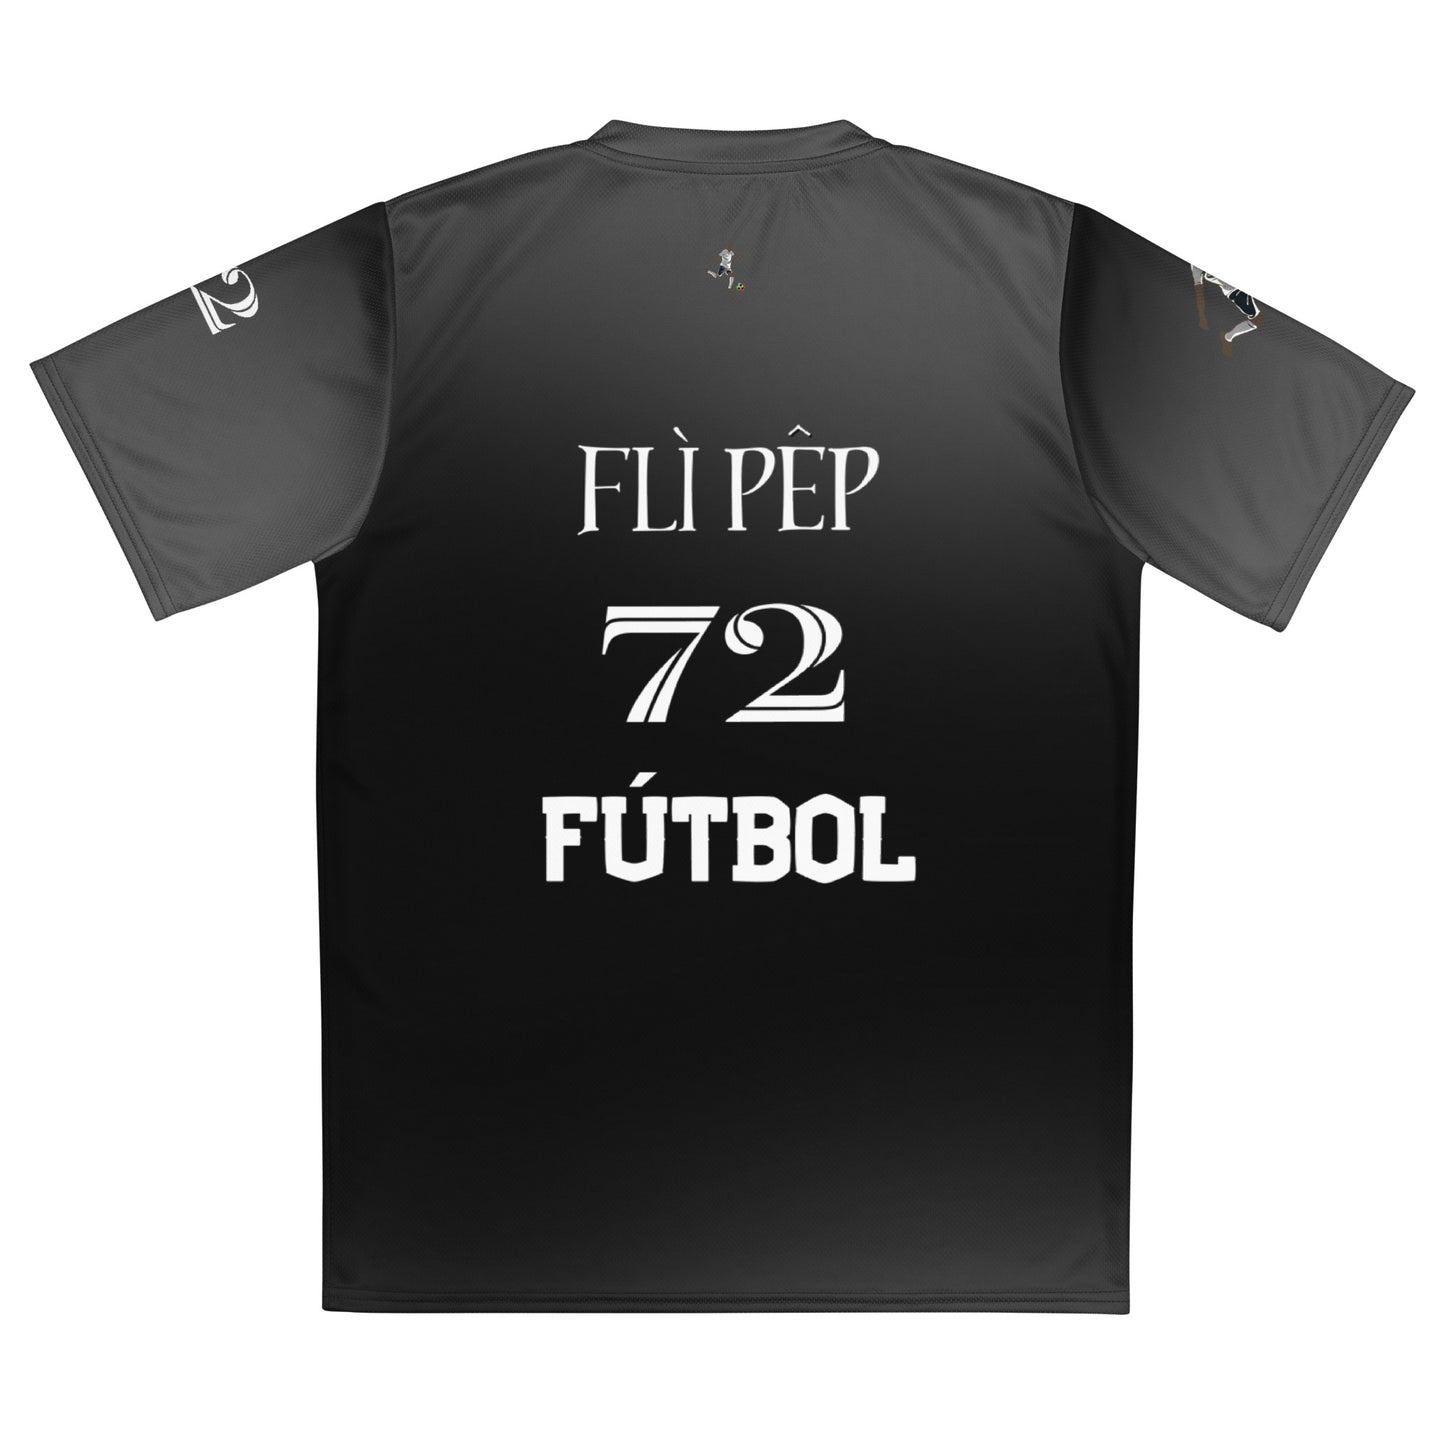 Smoke Grey Futebol Jersey - FLÌ PÊP™